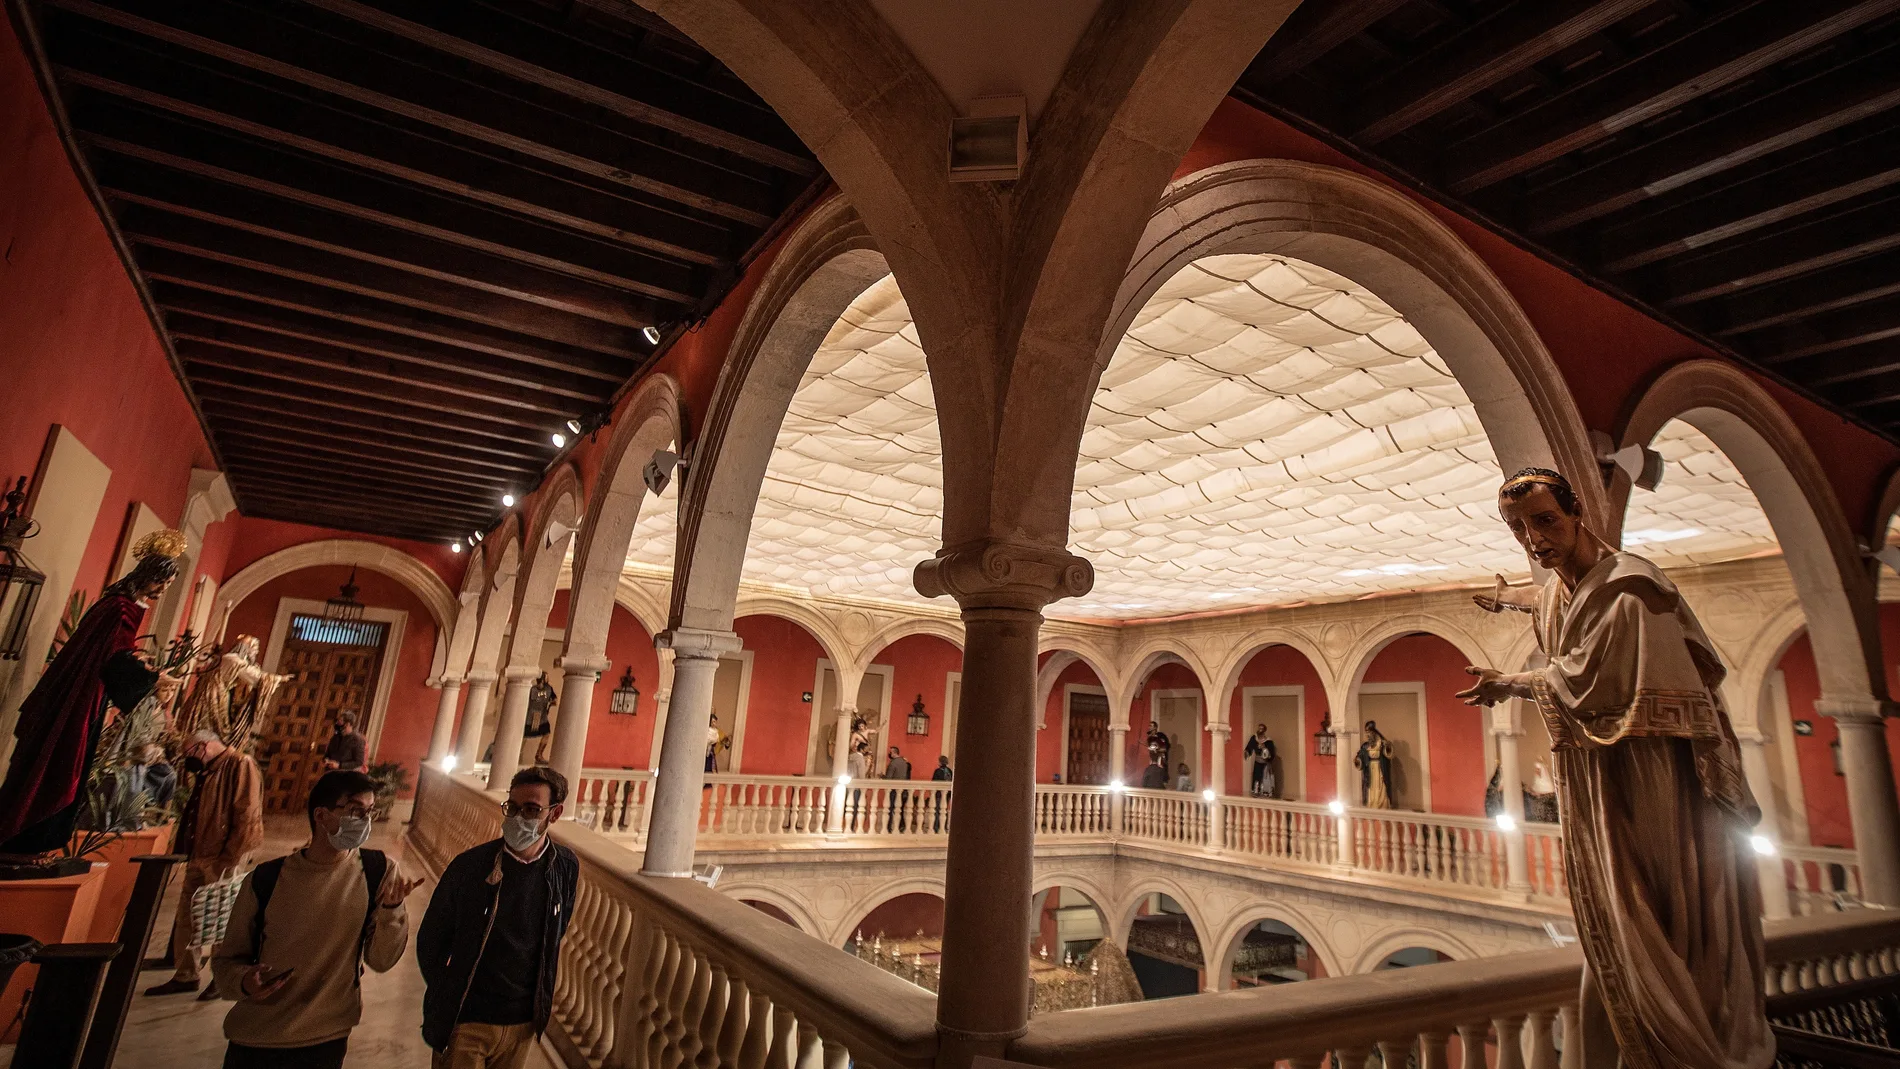 Parte de la exposición “In Nomine Dei” donde la Fundación Cajasol y el Consejo de Hermandades han reunido más de 250 piezas del patrimonio artístico de las 70 hermandades de penitencia de la ciudad